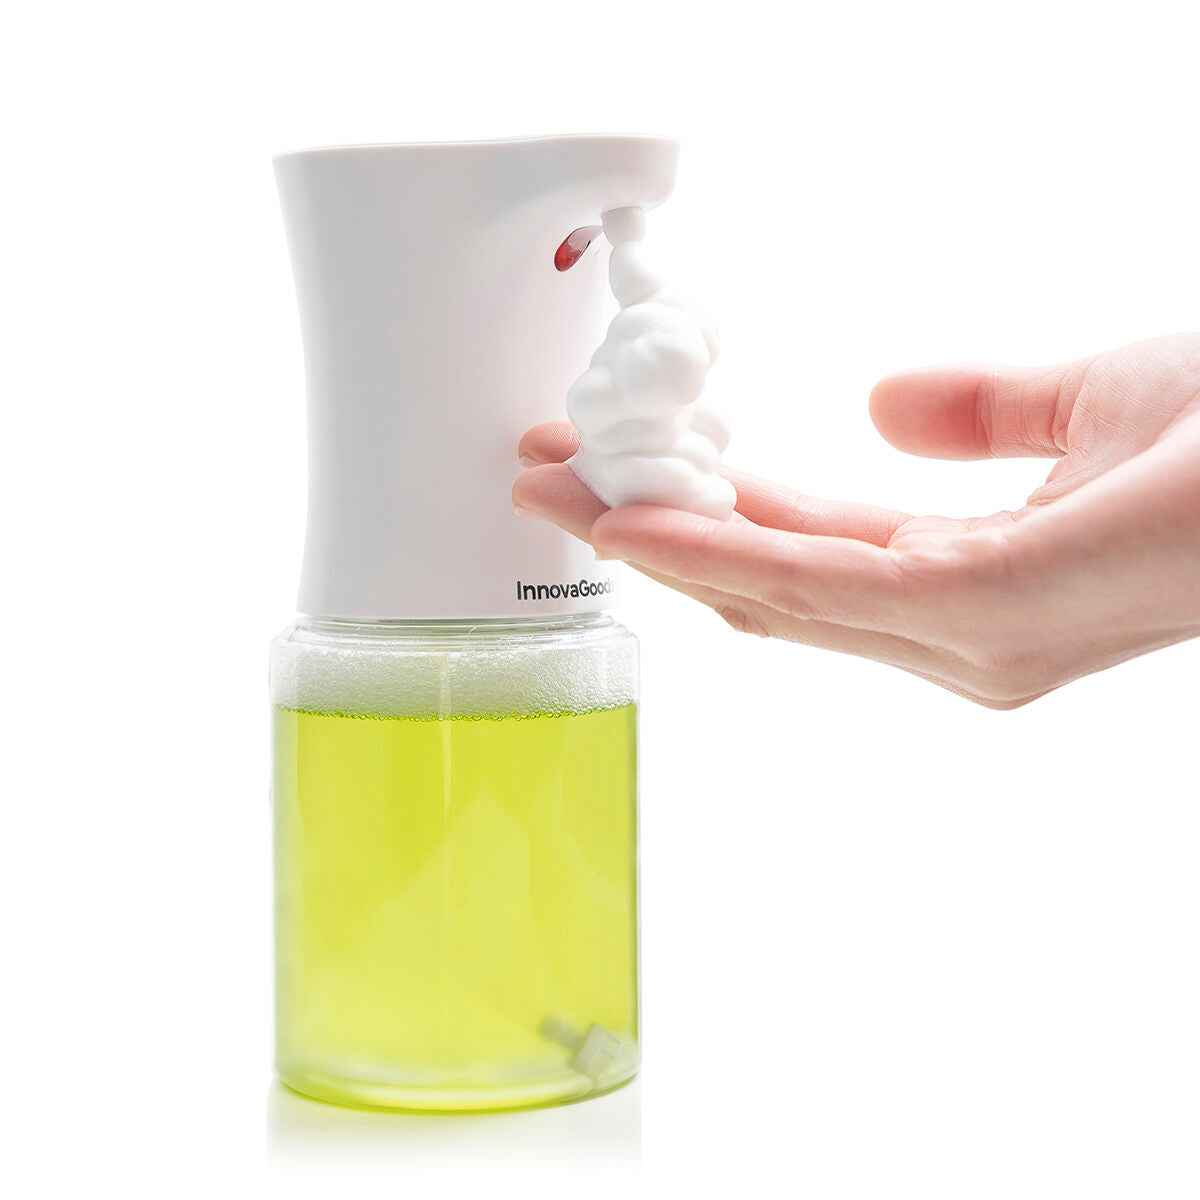 Distributeur automatique de savon mousse avec capteur Foamy InnovaGoods